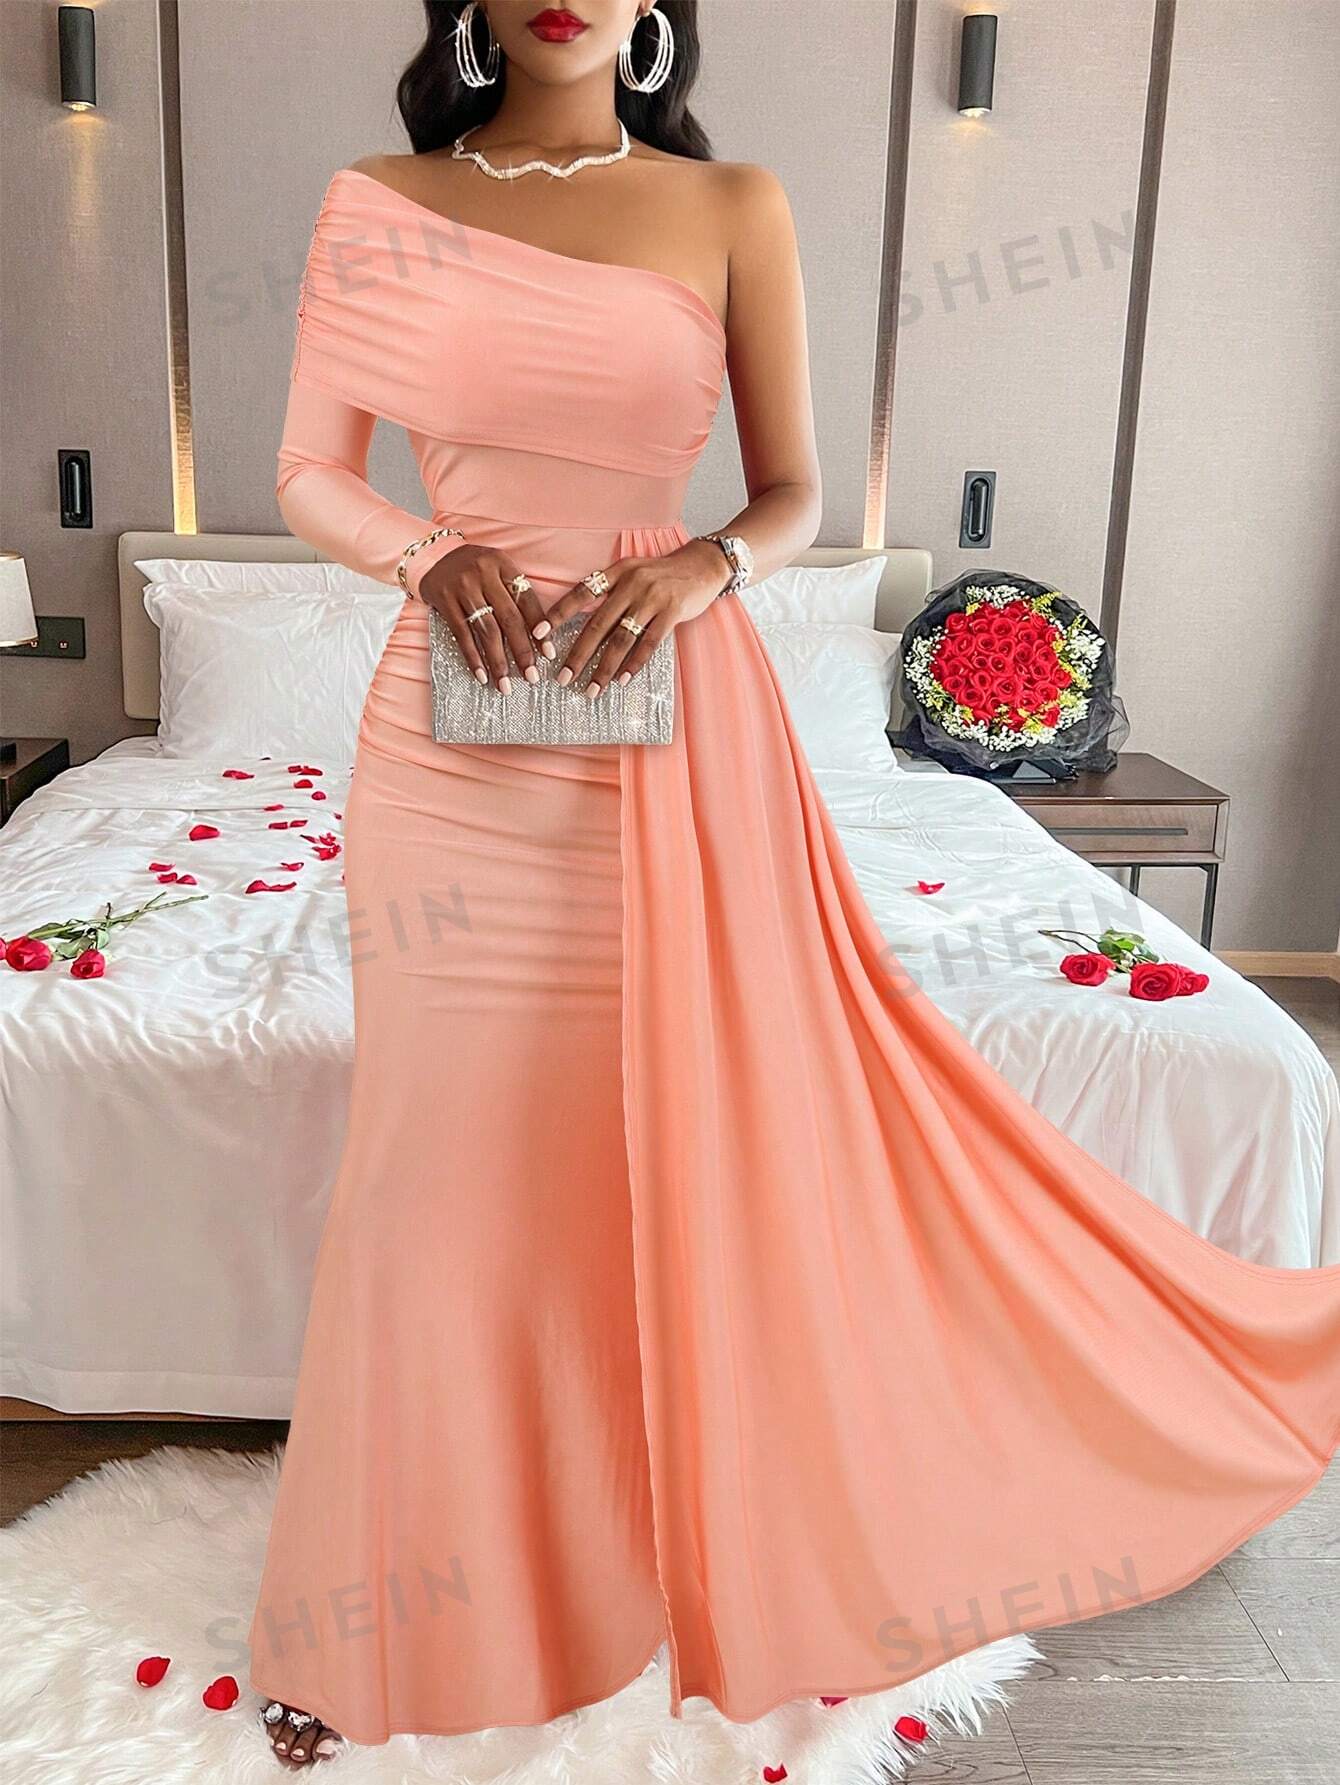 женское свадебное платье с открытыми плечами элегантное платье с открытыми плечами и длинными рукавами Элегантное платье с открытыми плечами и длинными рукавами, пыльный розовый